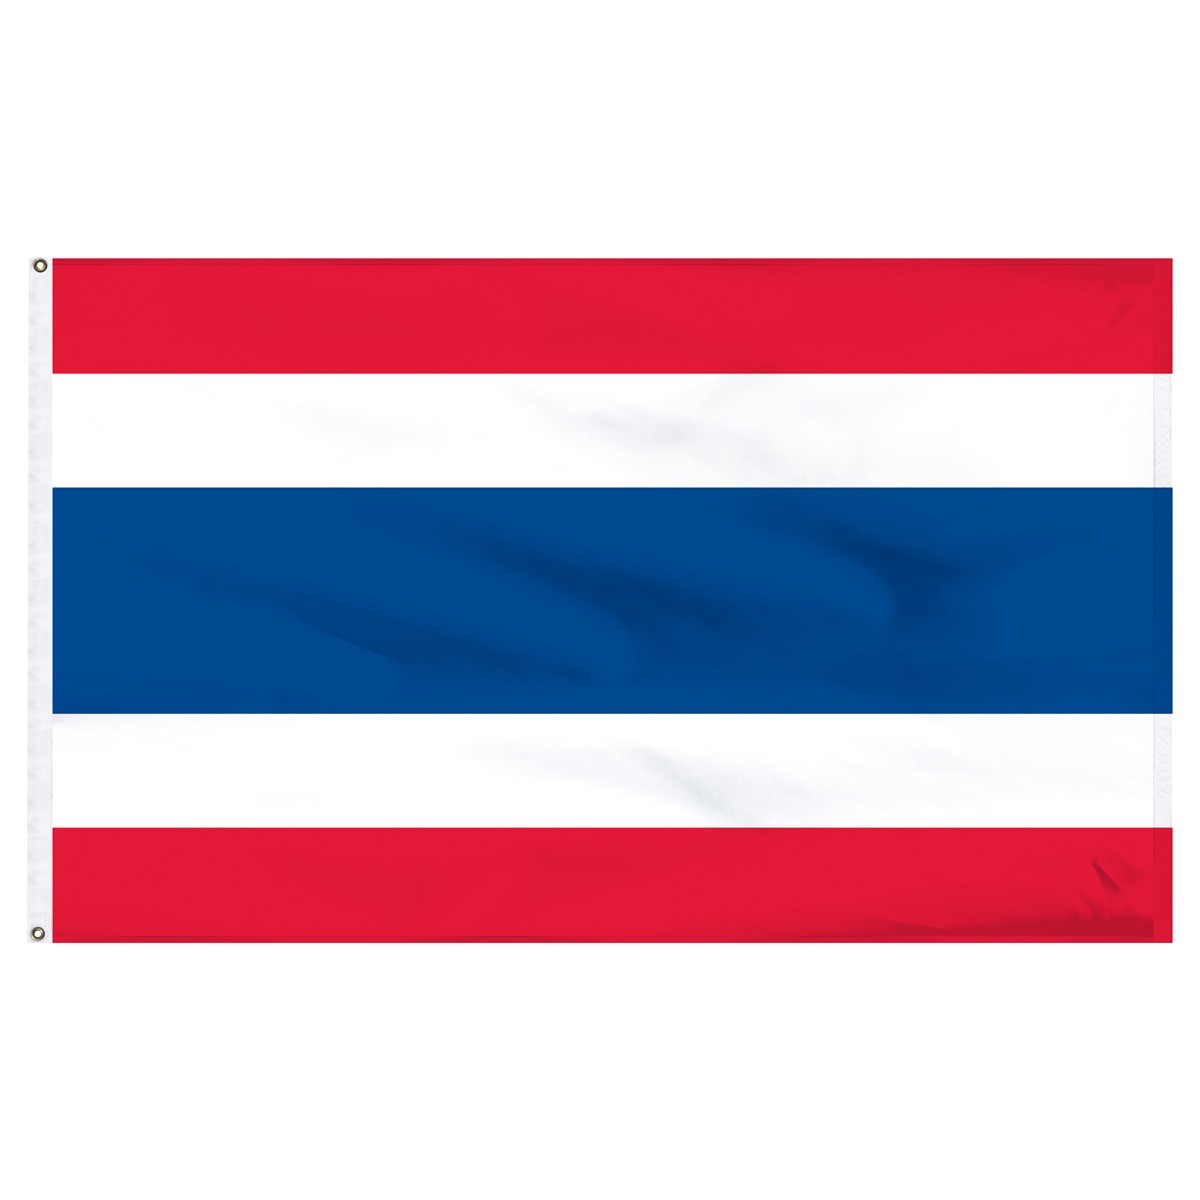 Thailand Beach Flag and Sailing Flag